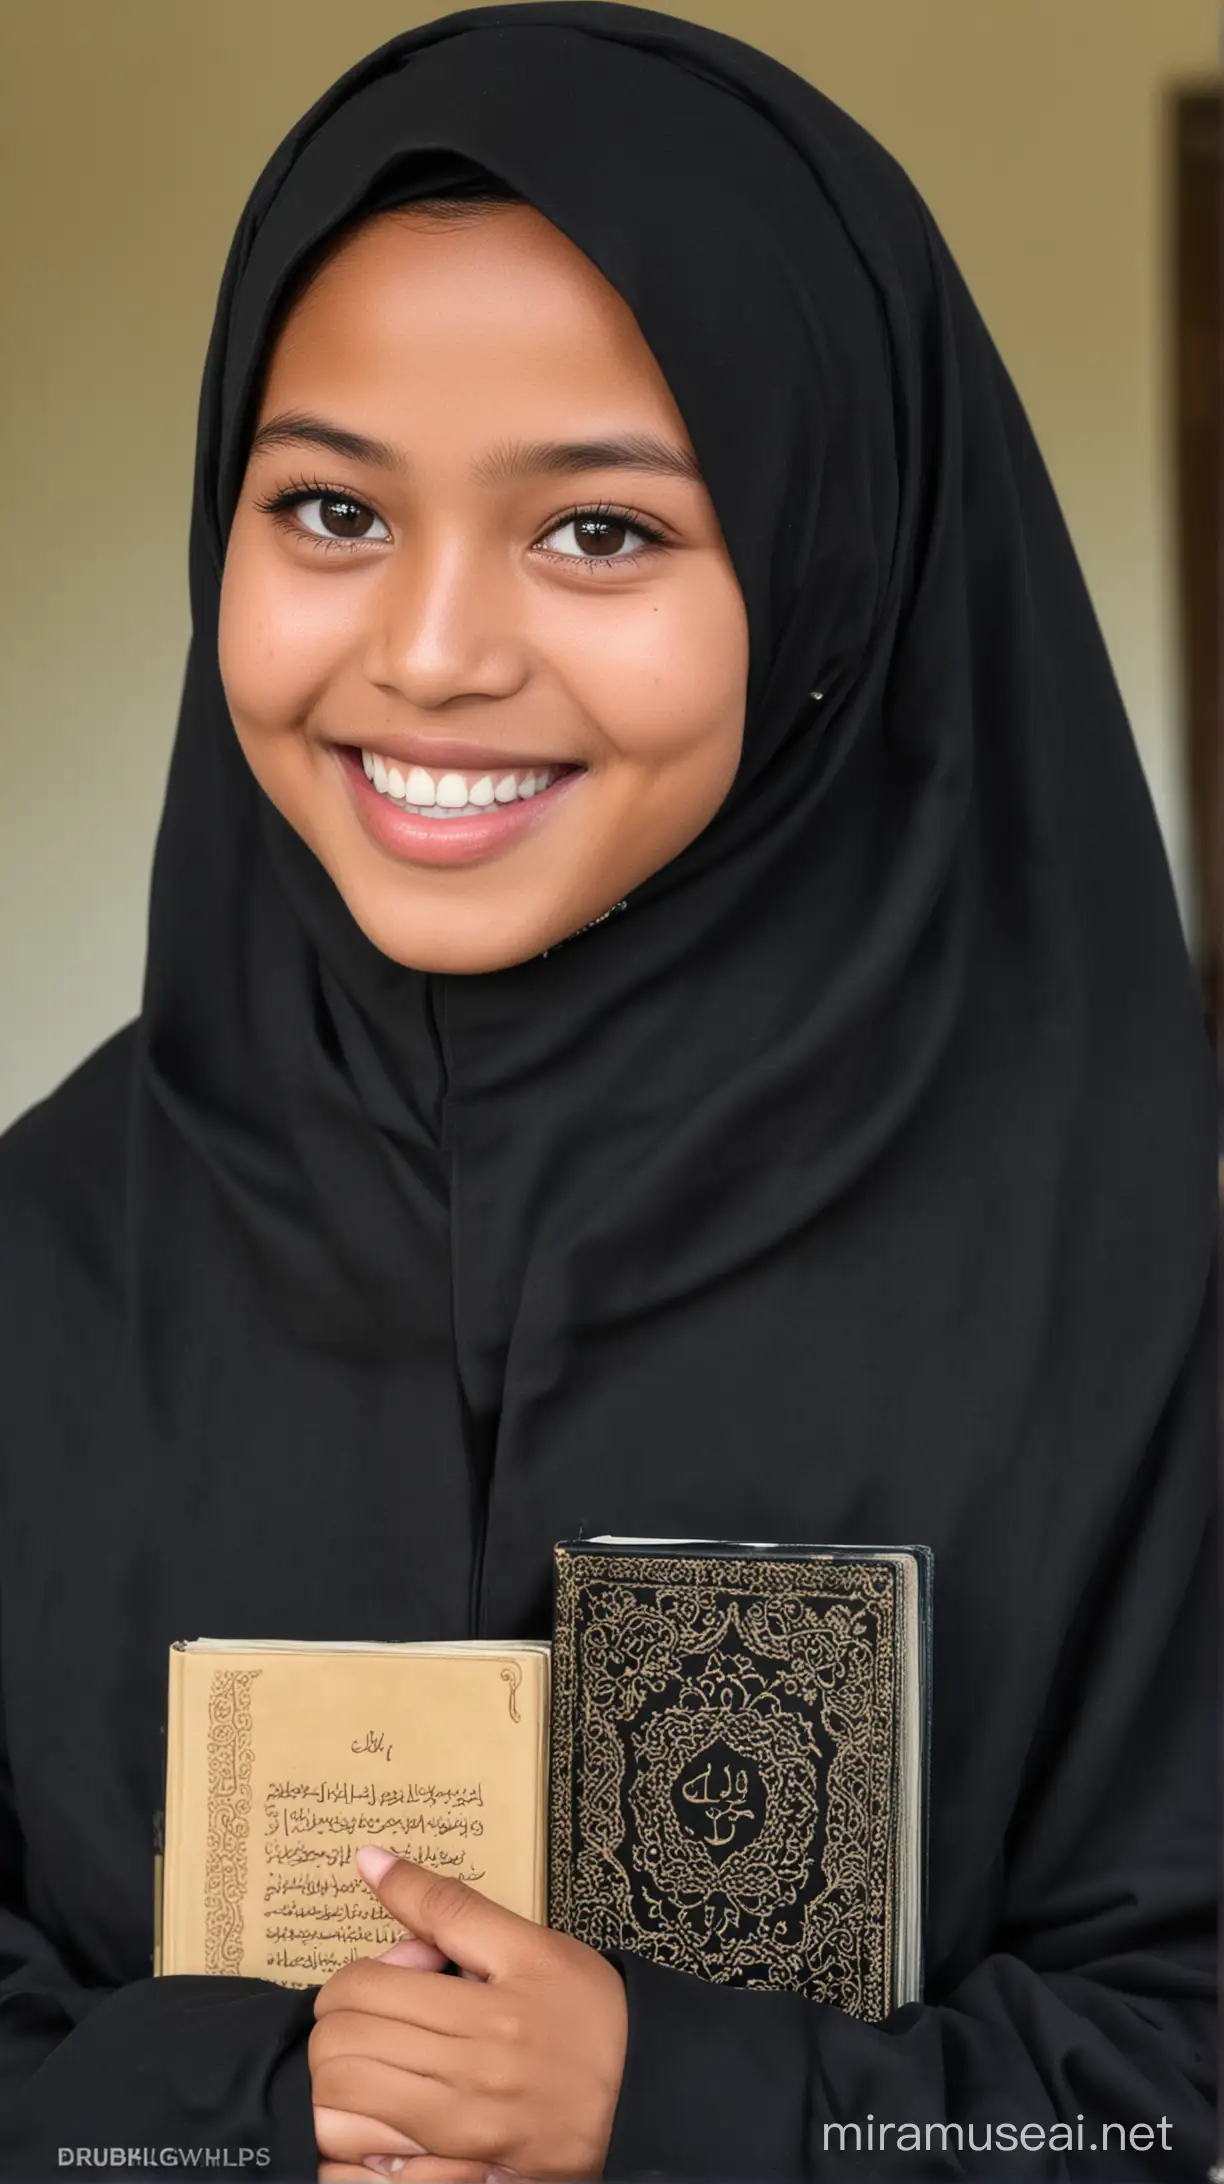 Perempuan indonesia usia 13 tahun, memakai gamis dan juga jilbab, warna hitam senada dengan gamis, bibir tersenyum,sedang membawa kitab suci al-qur'an, disebuah pondok pesantren.